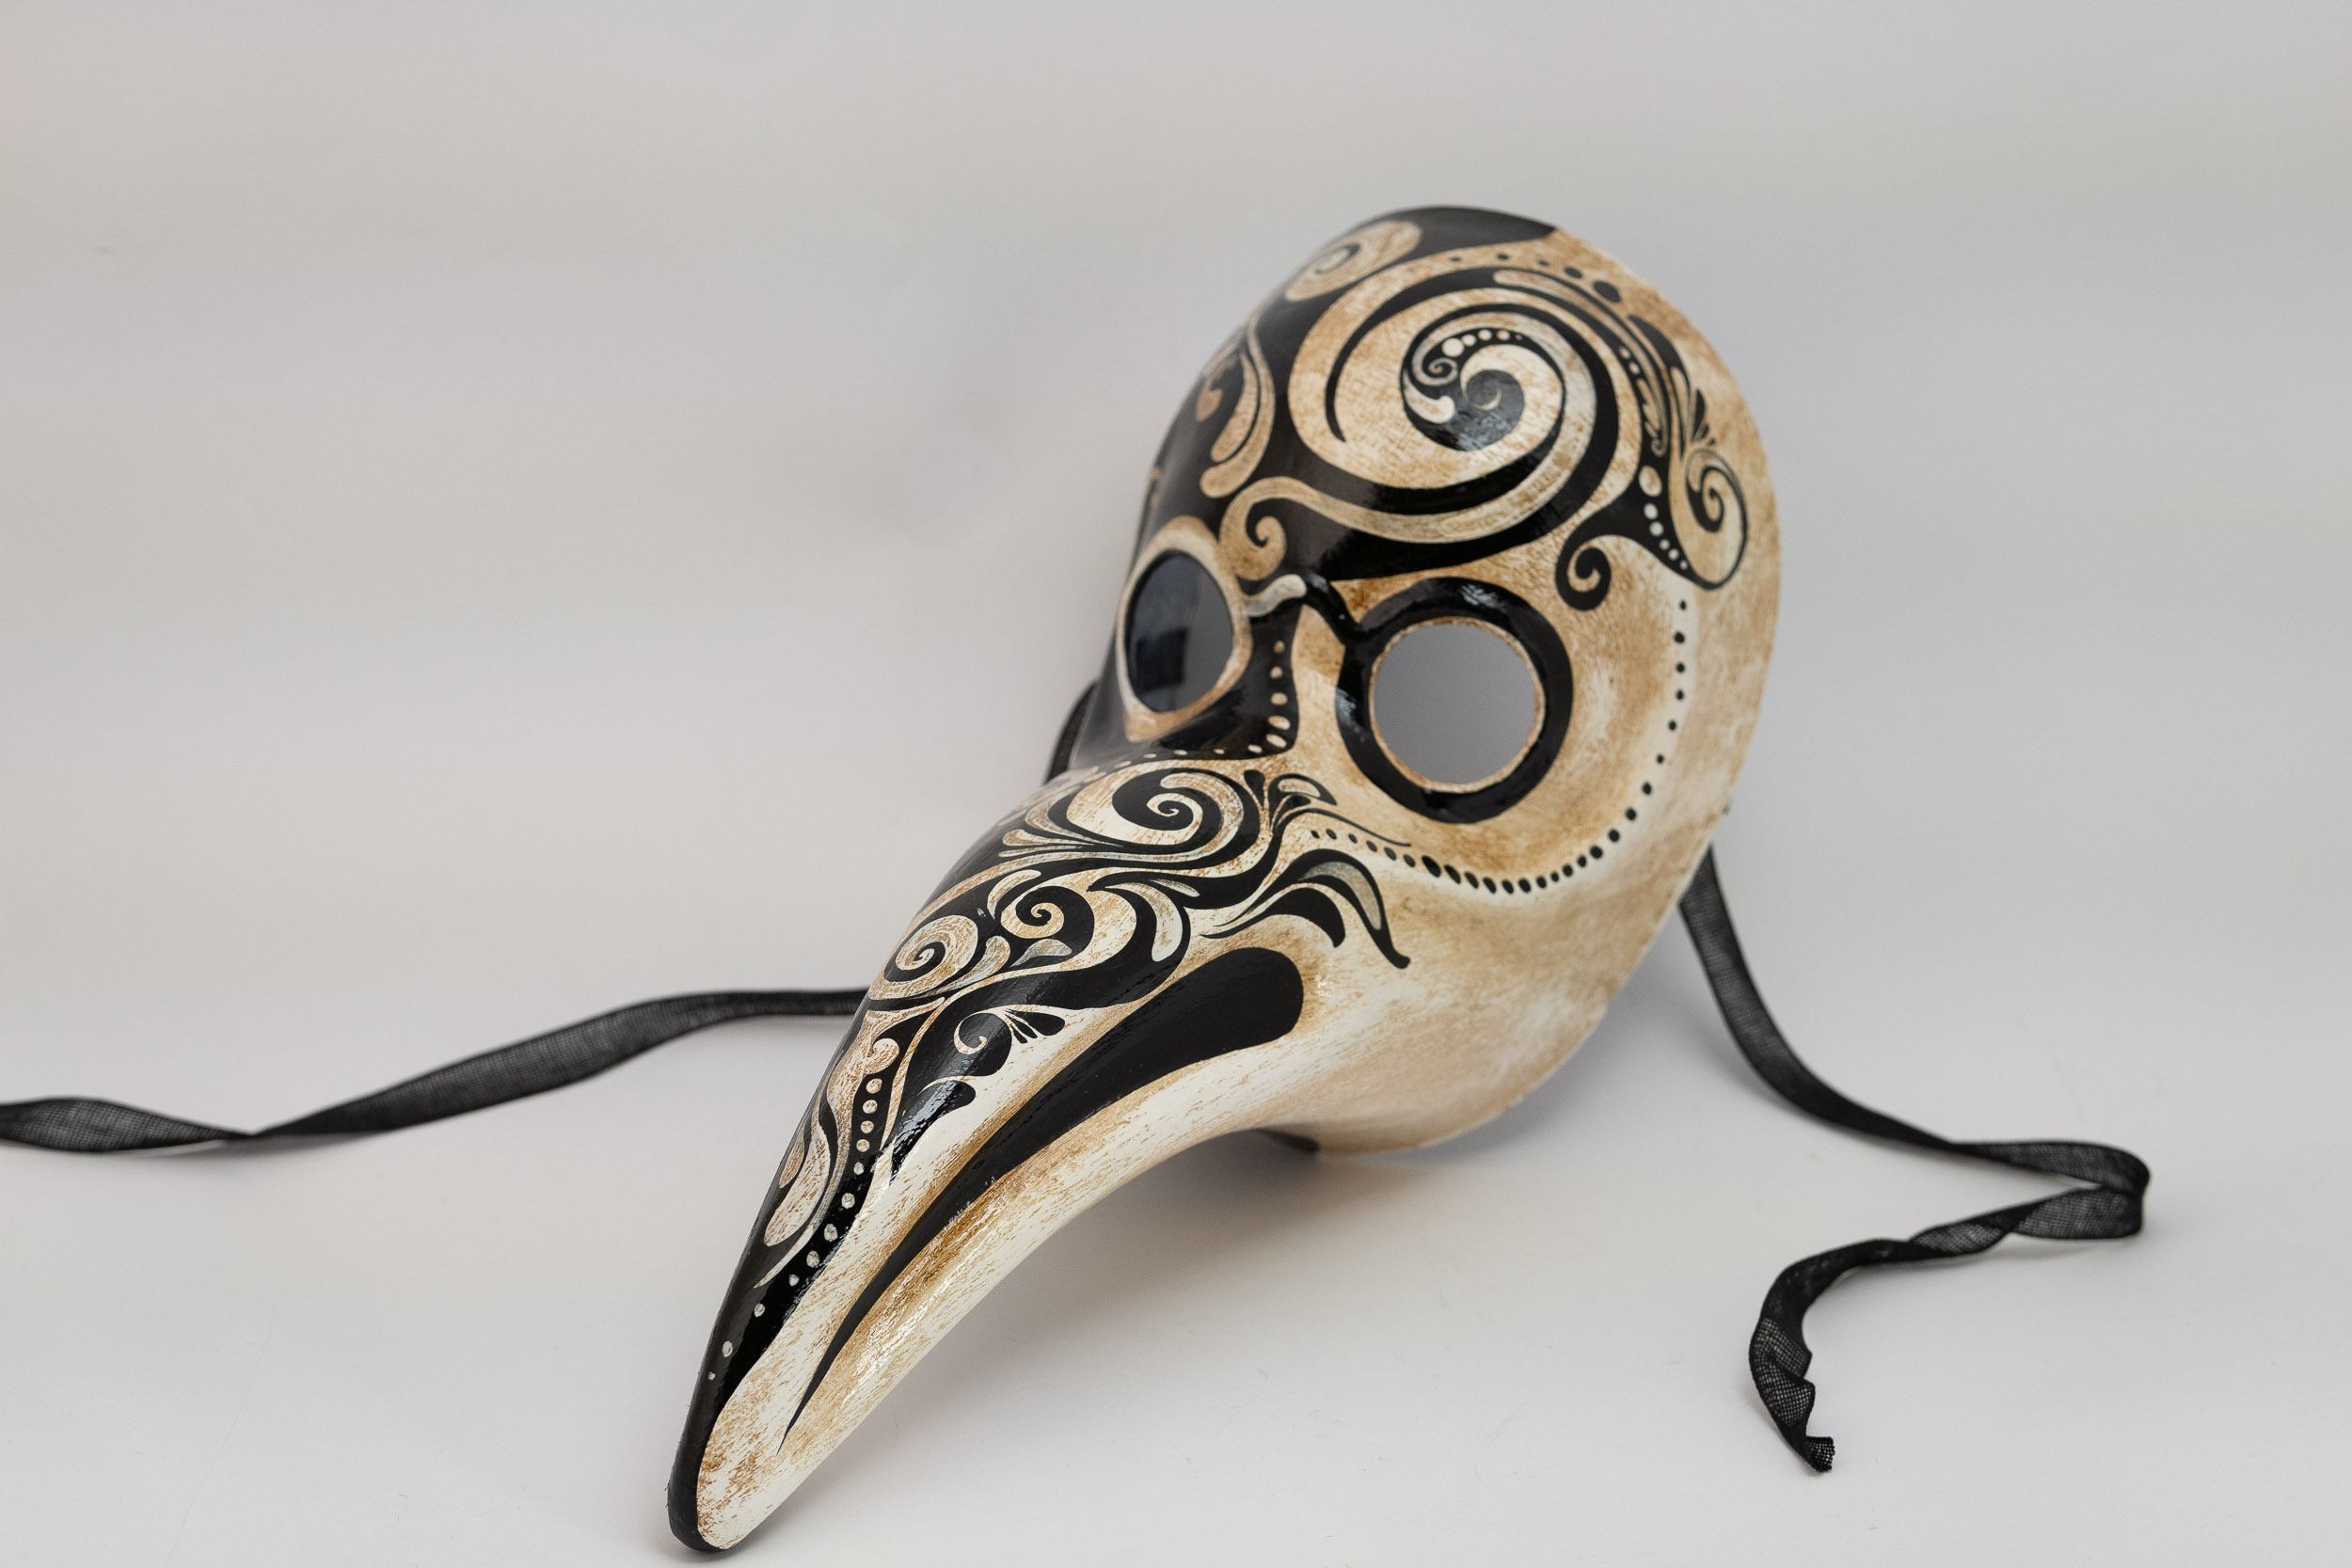 Plague Mask - "Fede Venezia" Collection